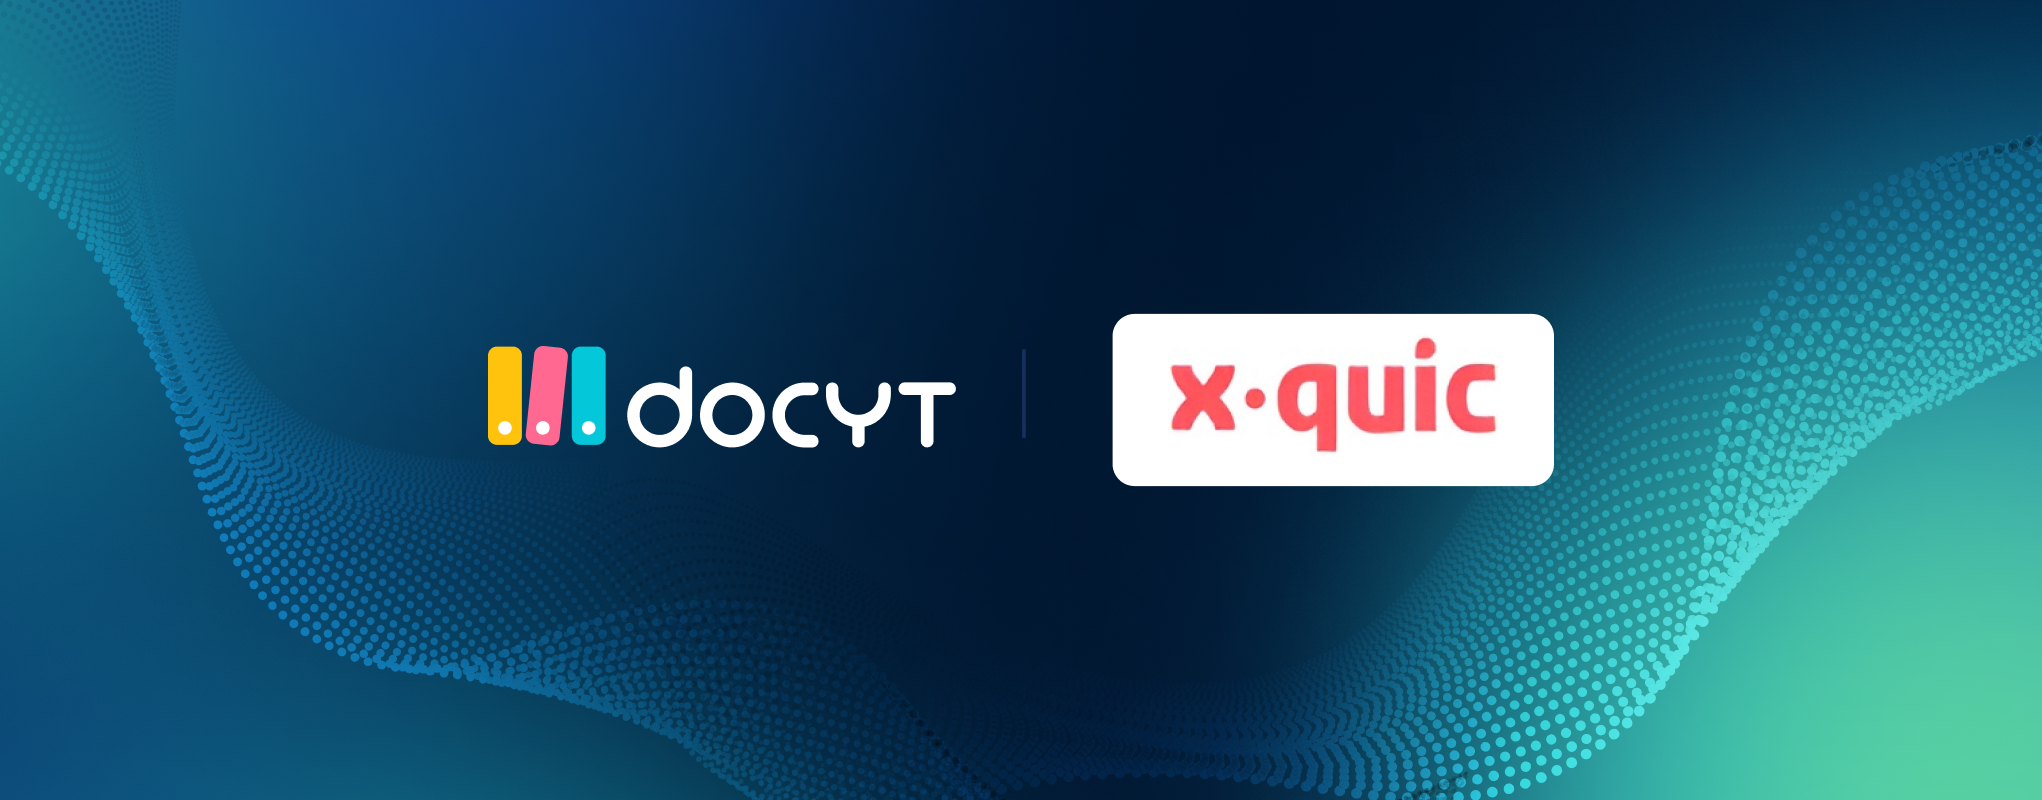 X Quic + Docyt Partnership Blog Imagery